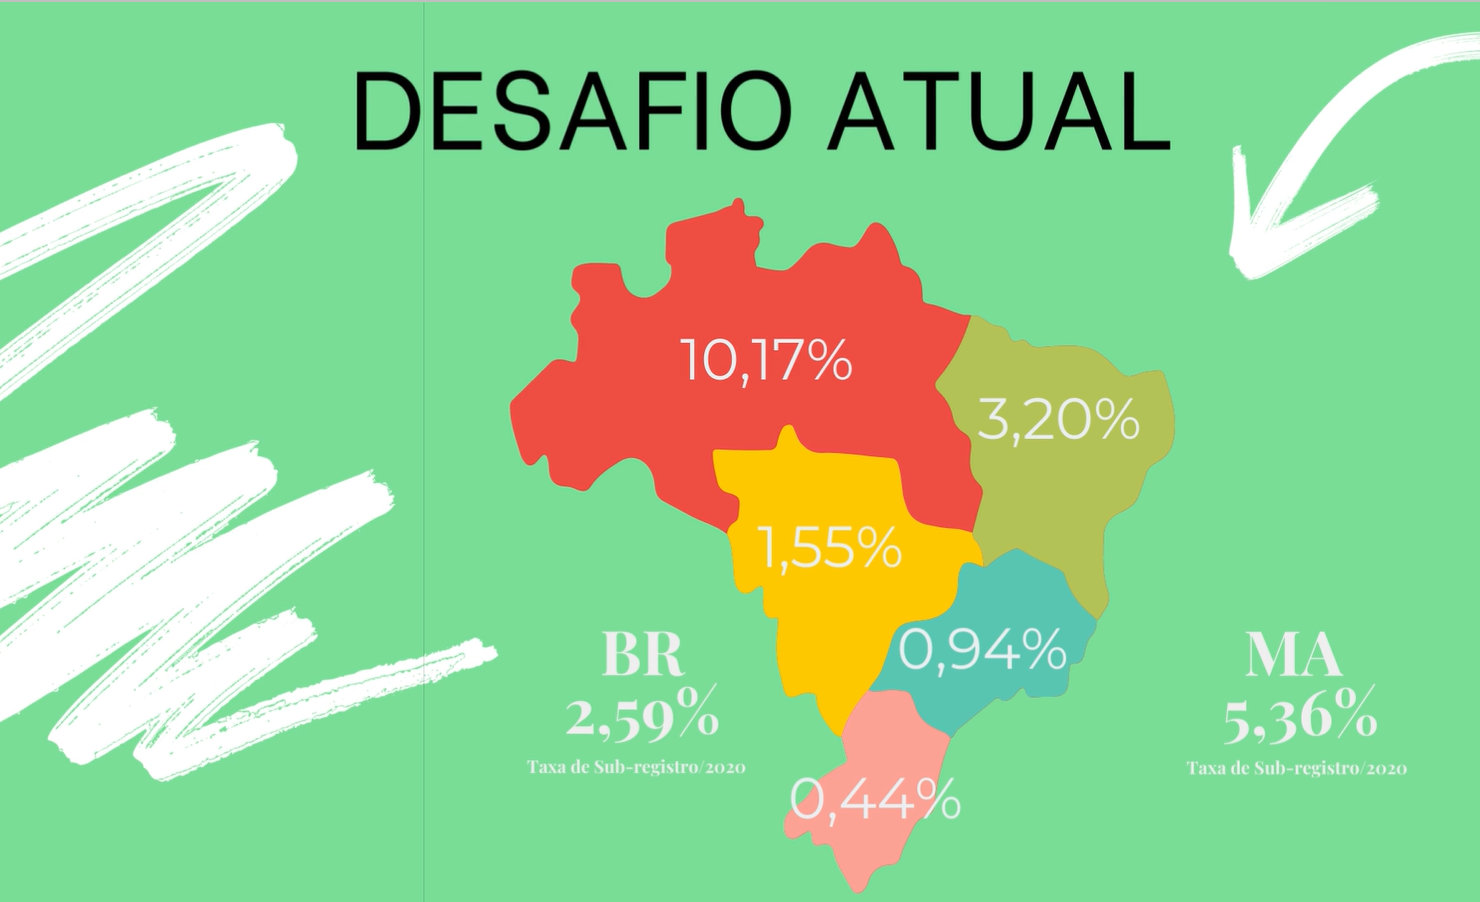 Quadro com mapa do Brasil, em fundo verde, enfocando os índices de sub-registro nas regiões do Brasil, nas cores rosa, verde, vermelho e amarela, com título "Desafio Atual", destacando o Estado do Maranhão, com 5,36% e a Região Nordeste, com 3,20%.